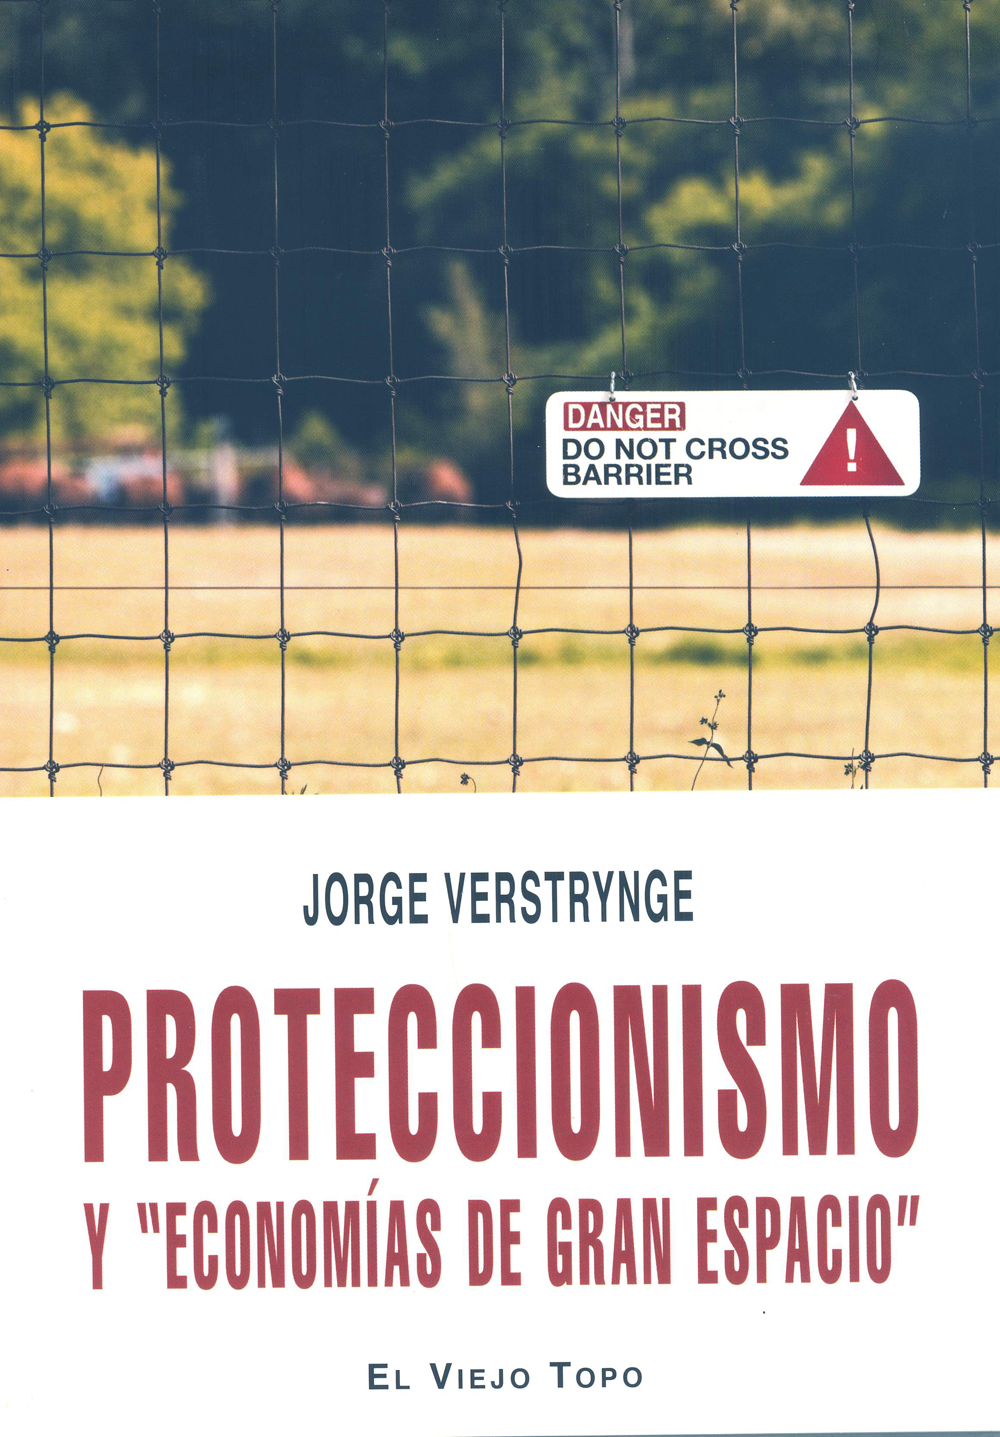 PROTECCIONISMO Y ŽECONOMÍAS DE GRAN ESPACIOŽ